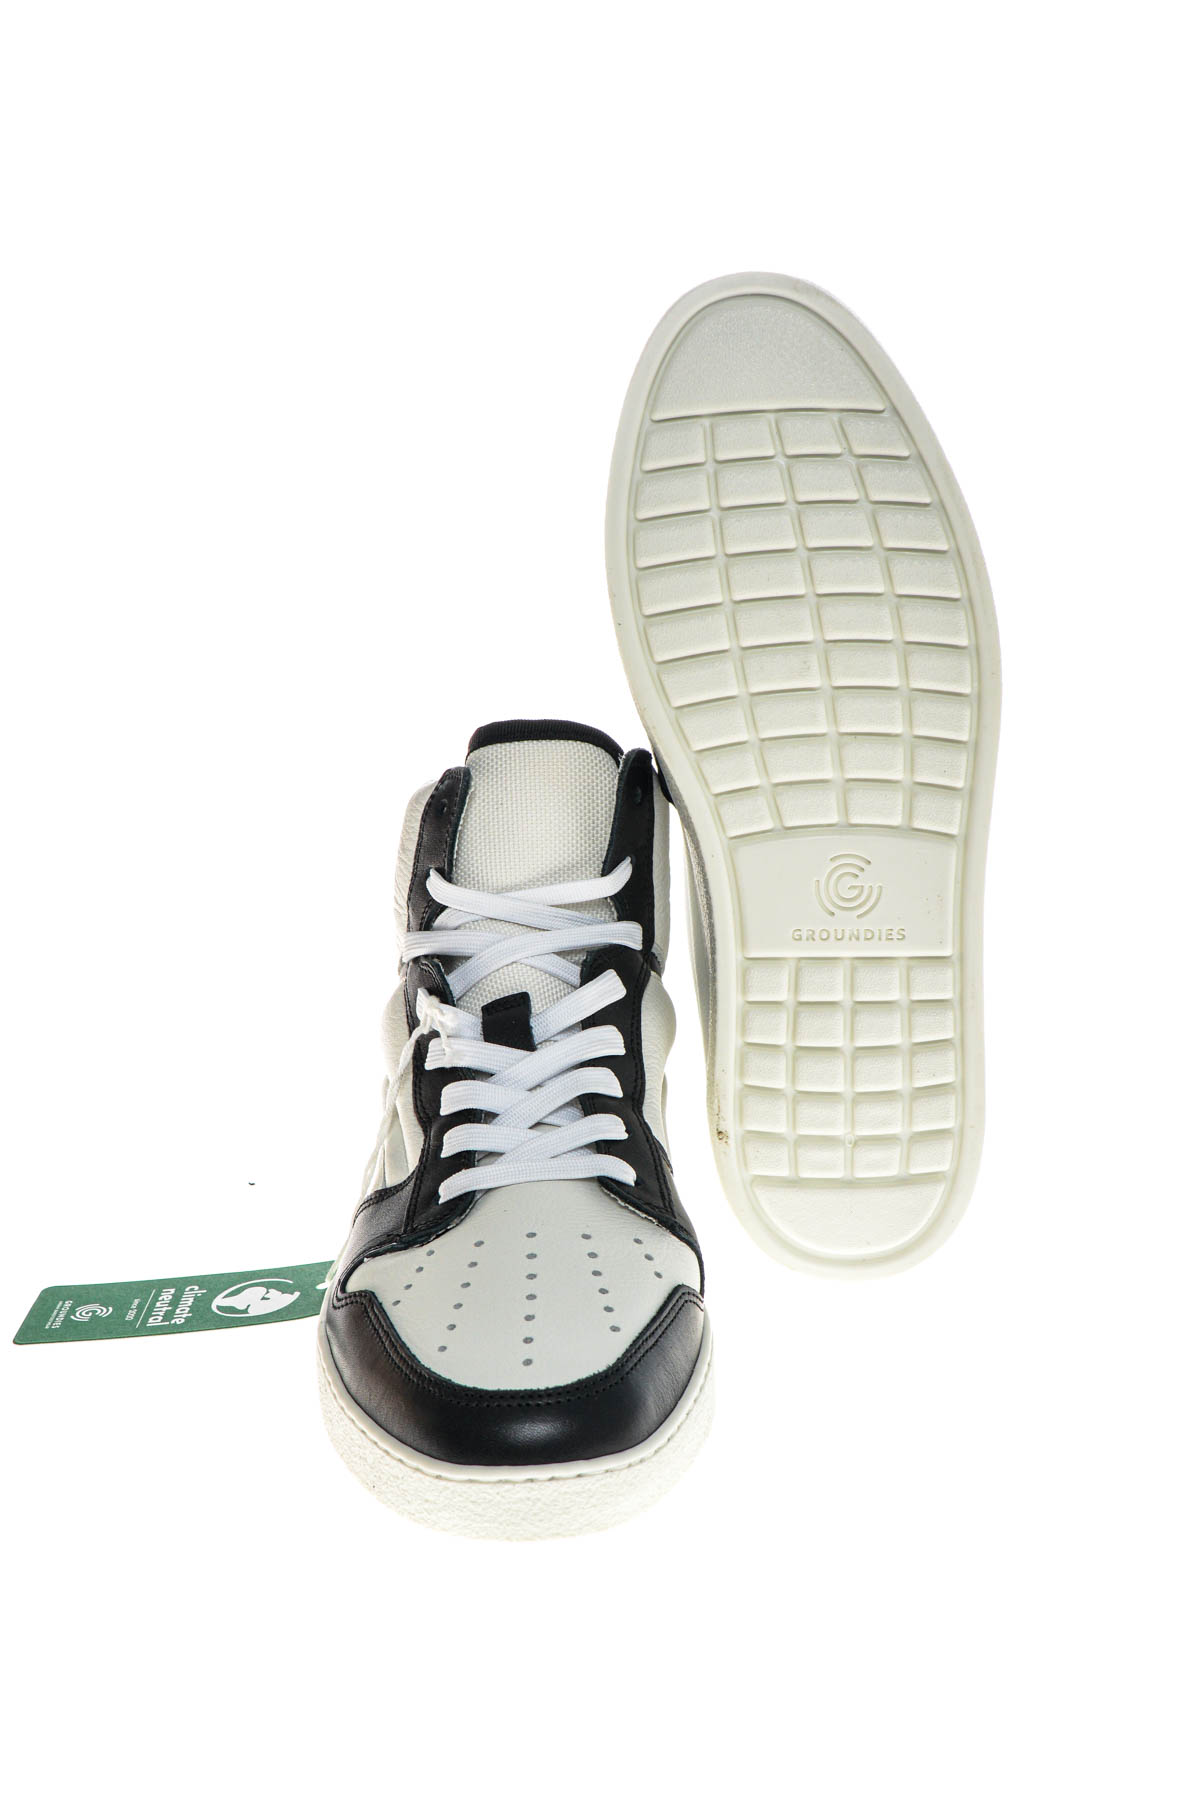 Γυναικεία αθλητικά παπούτσια - Groundies - 3